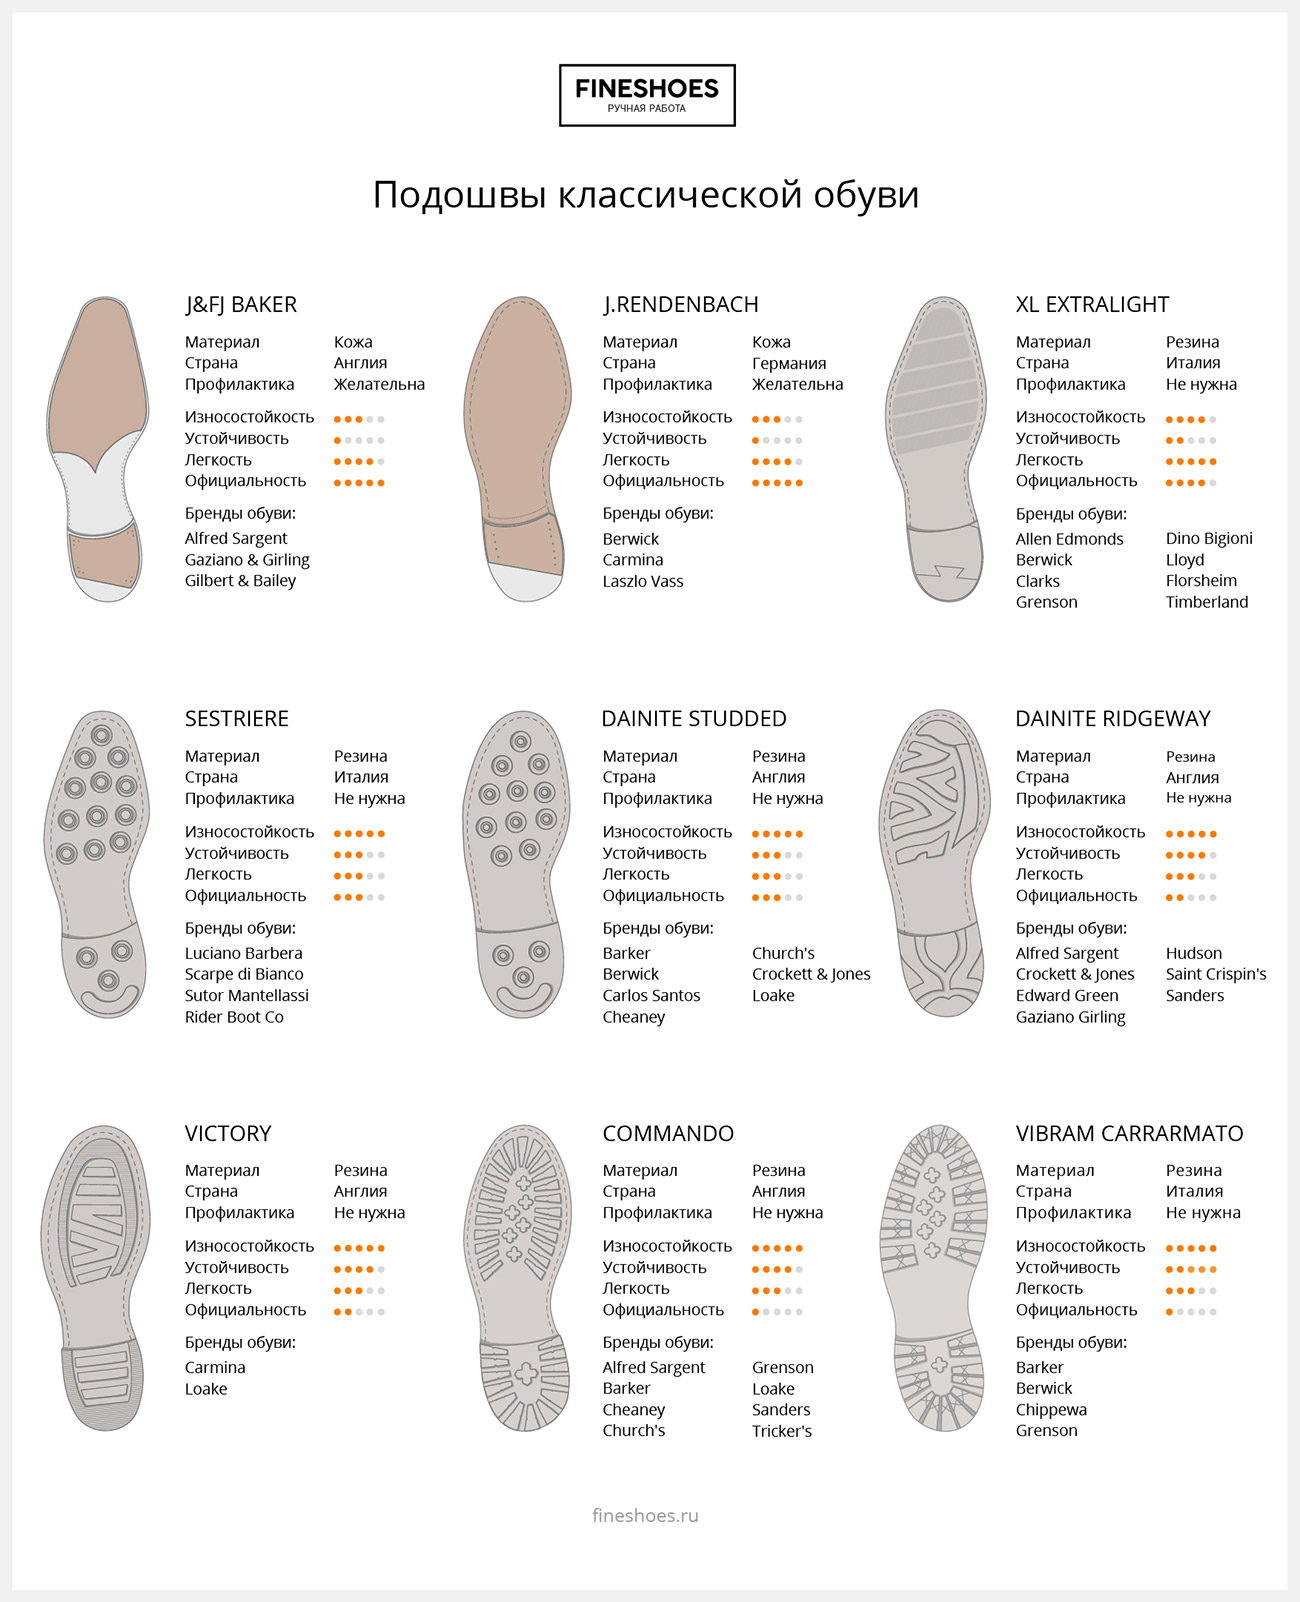 Инфографика подошв классической обуви